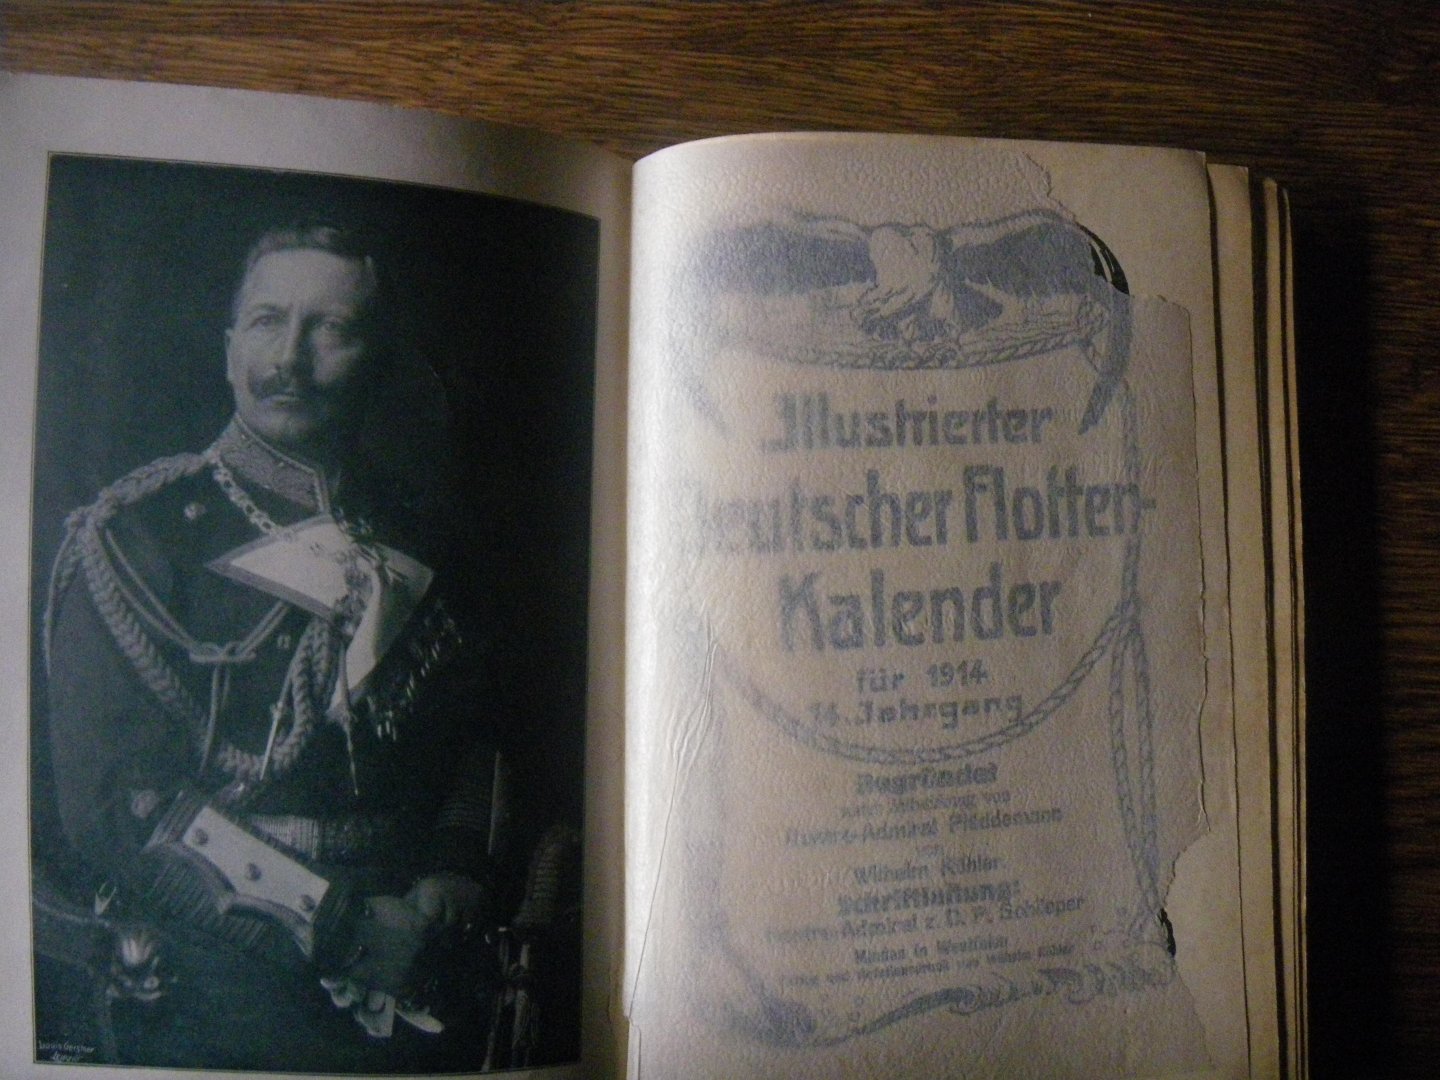 Plüddemann, KOHLER, Wilhelm - Illustrierter Deutscher Flotten-Kalender für 1914